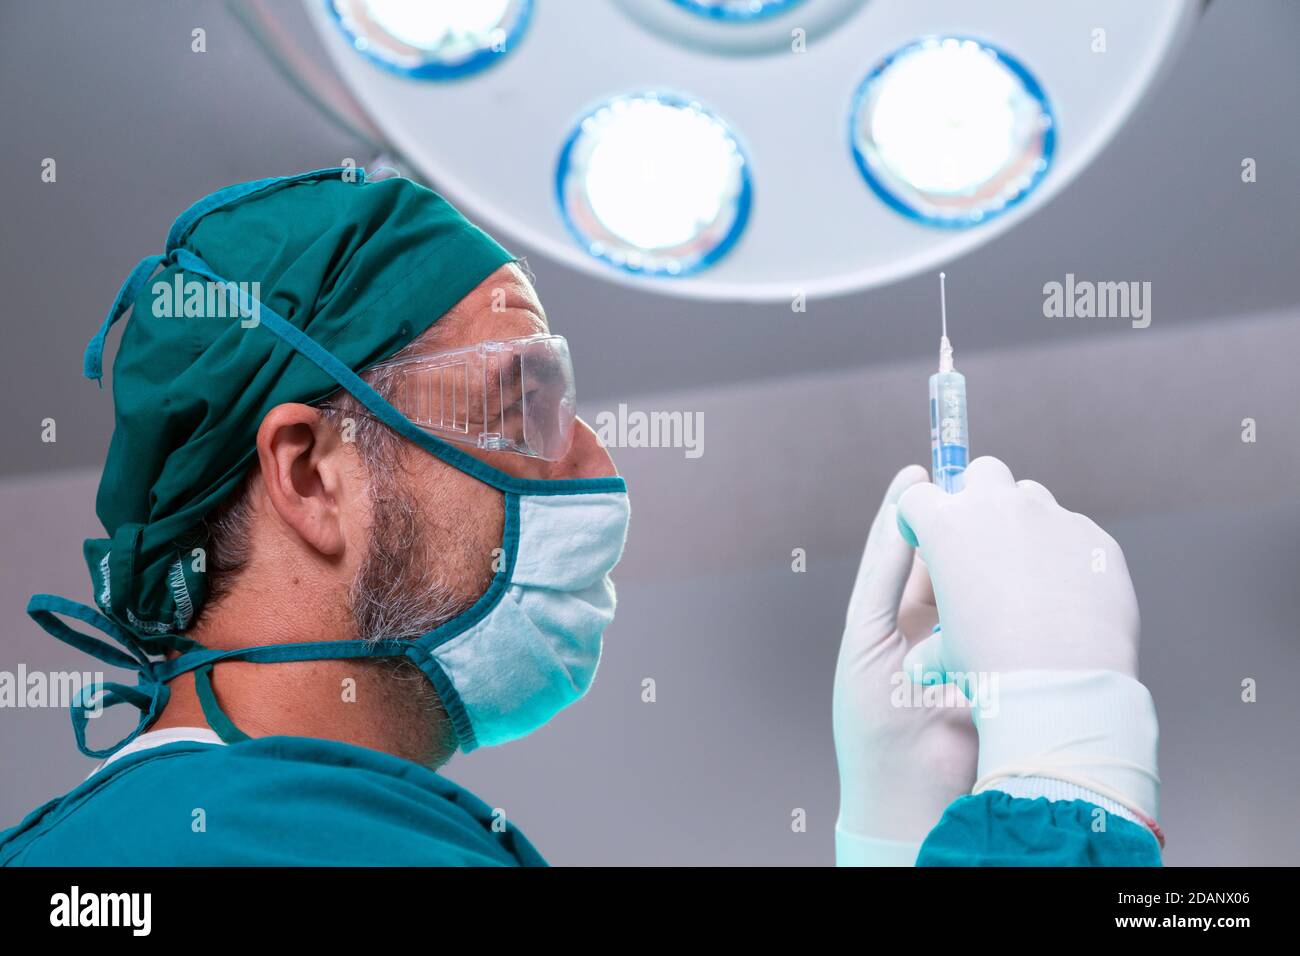 Professioneller Arzt hält Vollnarkose Medizin oder antivirale Arzneimittel Impfstoffnadel Spritze für den Patienten vor der Operation im Operationssaal bei t Stockfoto